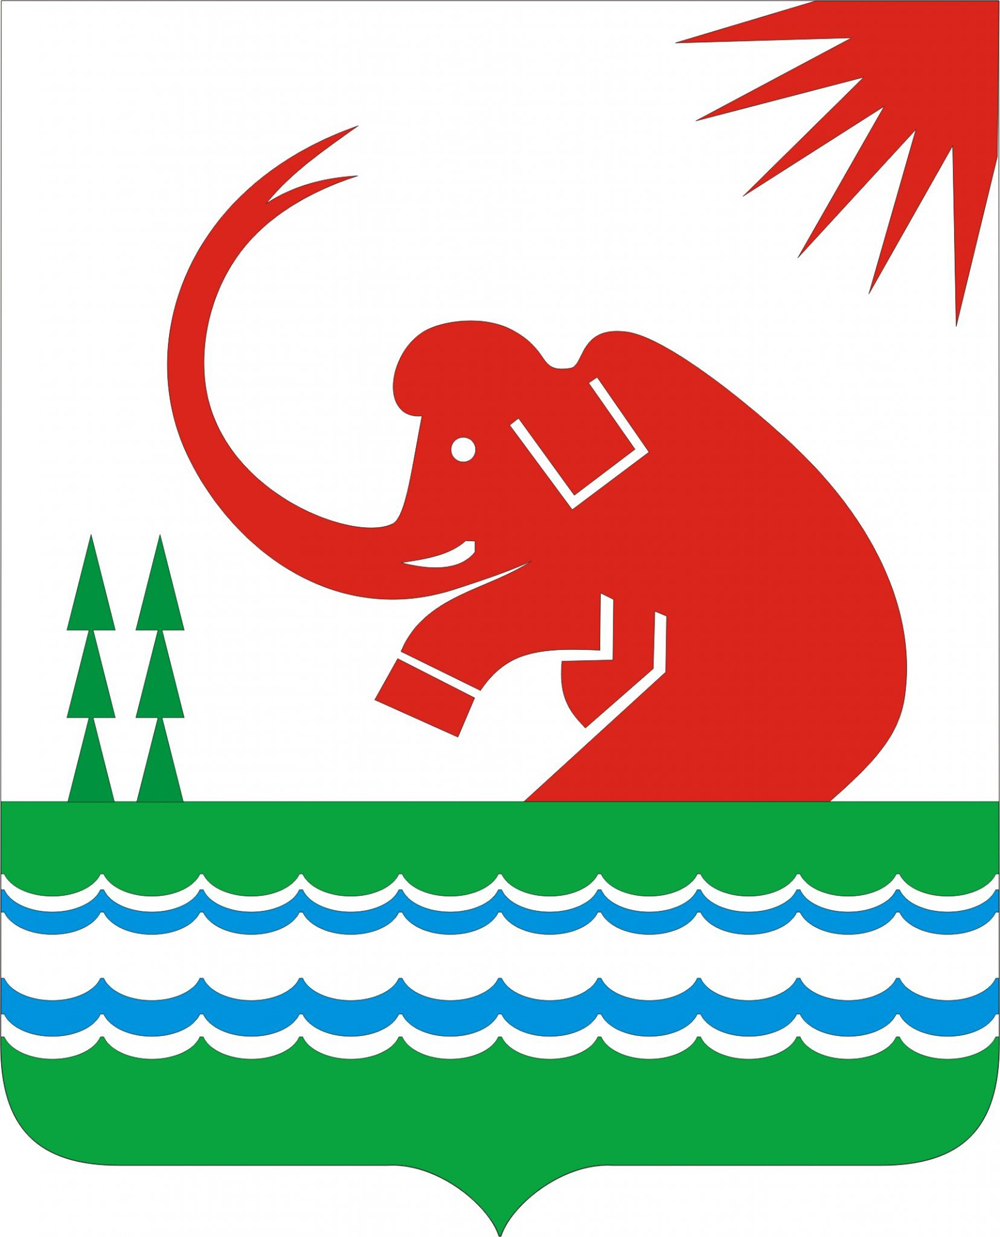 Wappen von Srednekolymsk (Jakutien, 5340 km u00f6stlich von Moskau), ein Mammut. In Jakutien wurden viele u00dcberreste von ihnen gefunden.